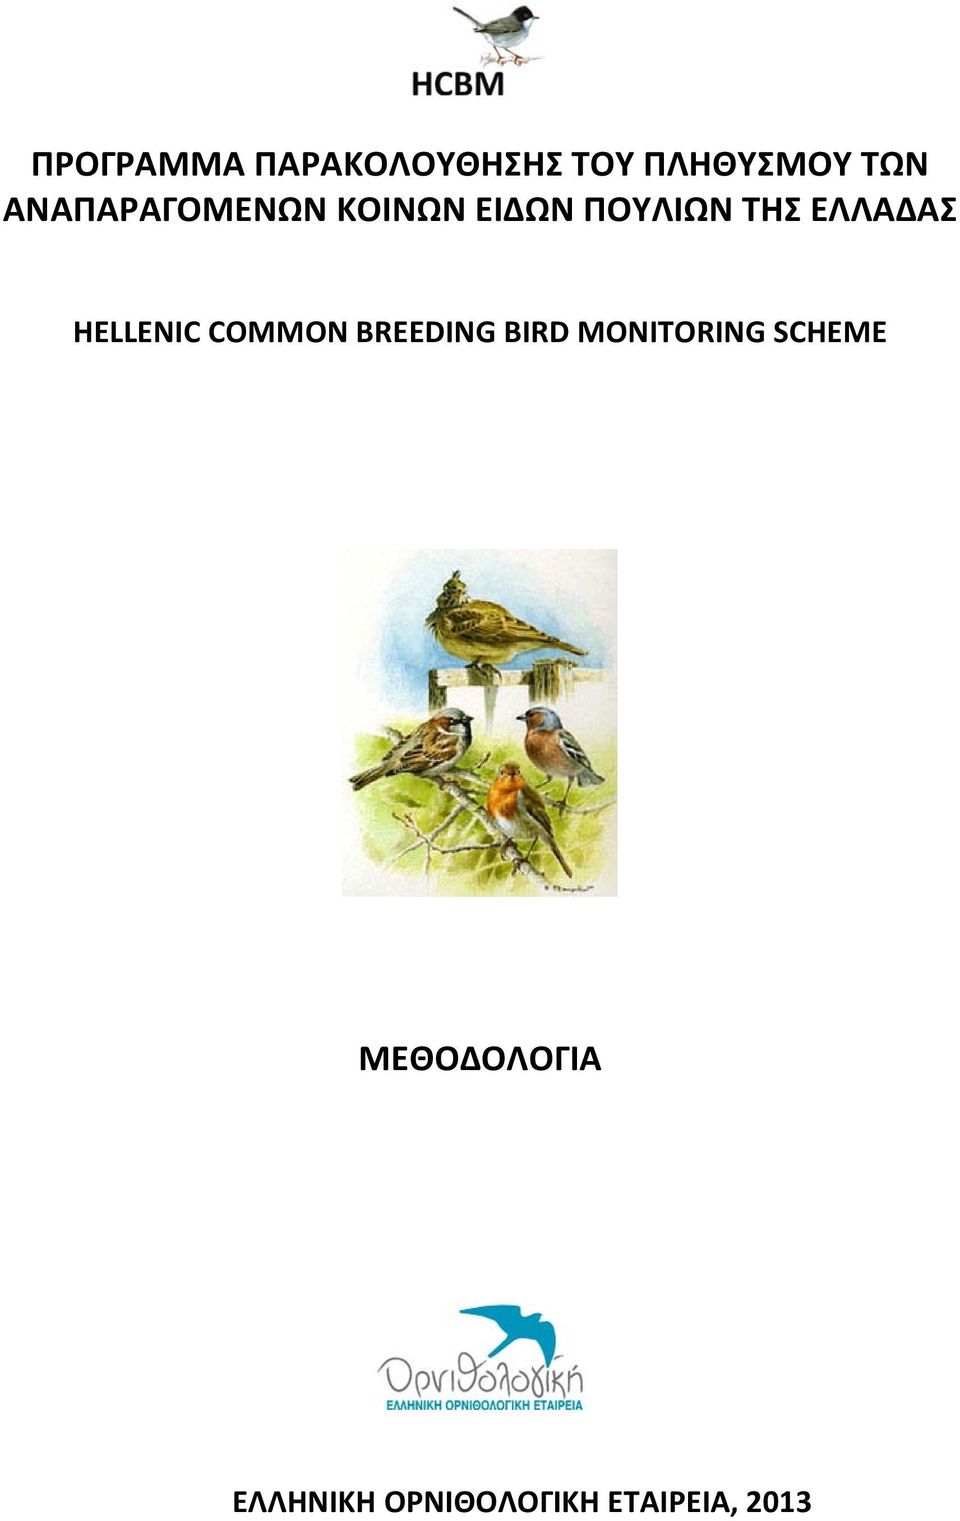 ΕΛΛΑΔΑΣ HELLENIC COMMON BREEDING BIRD